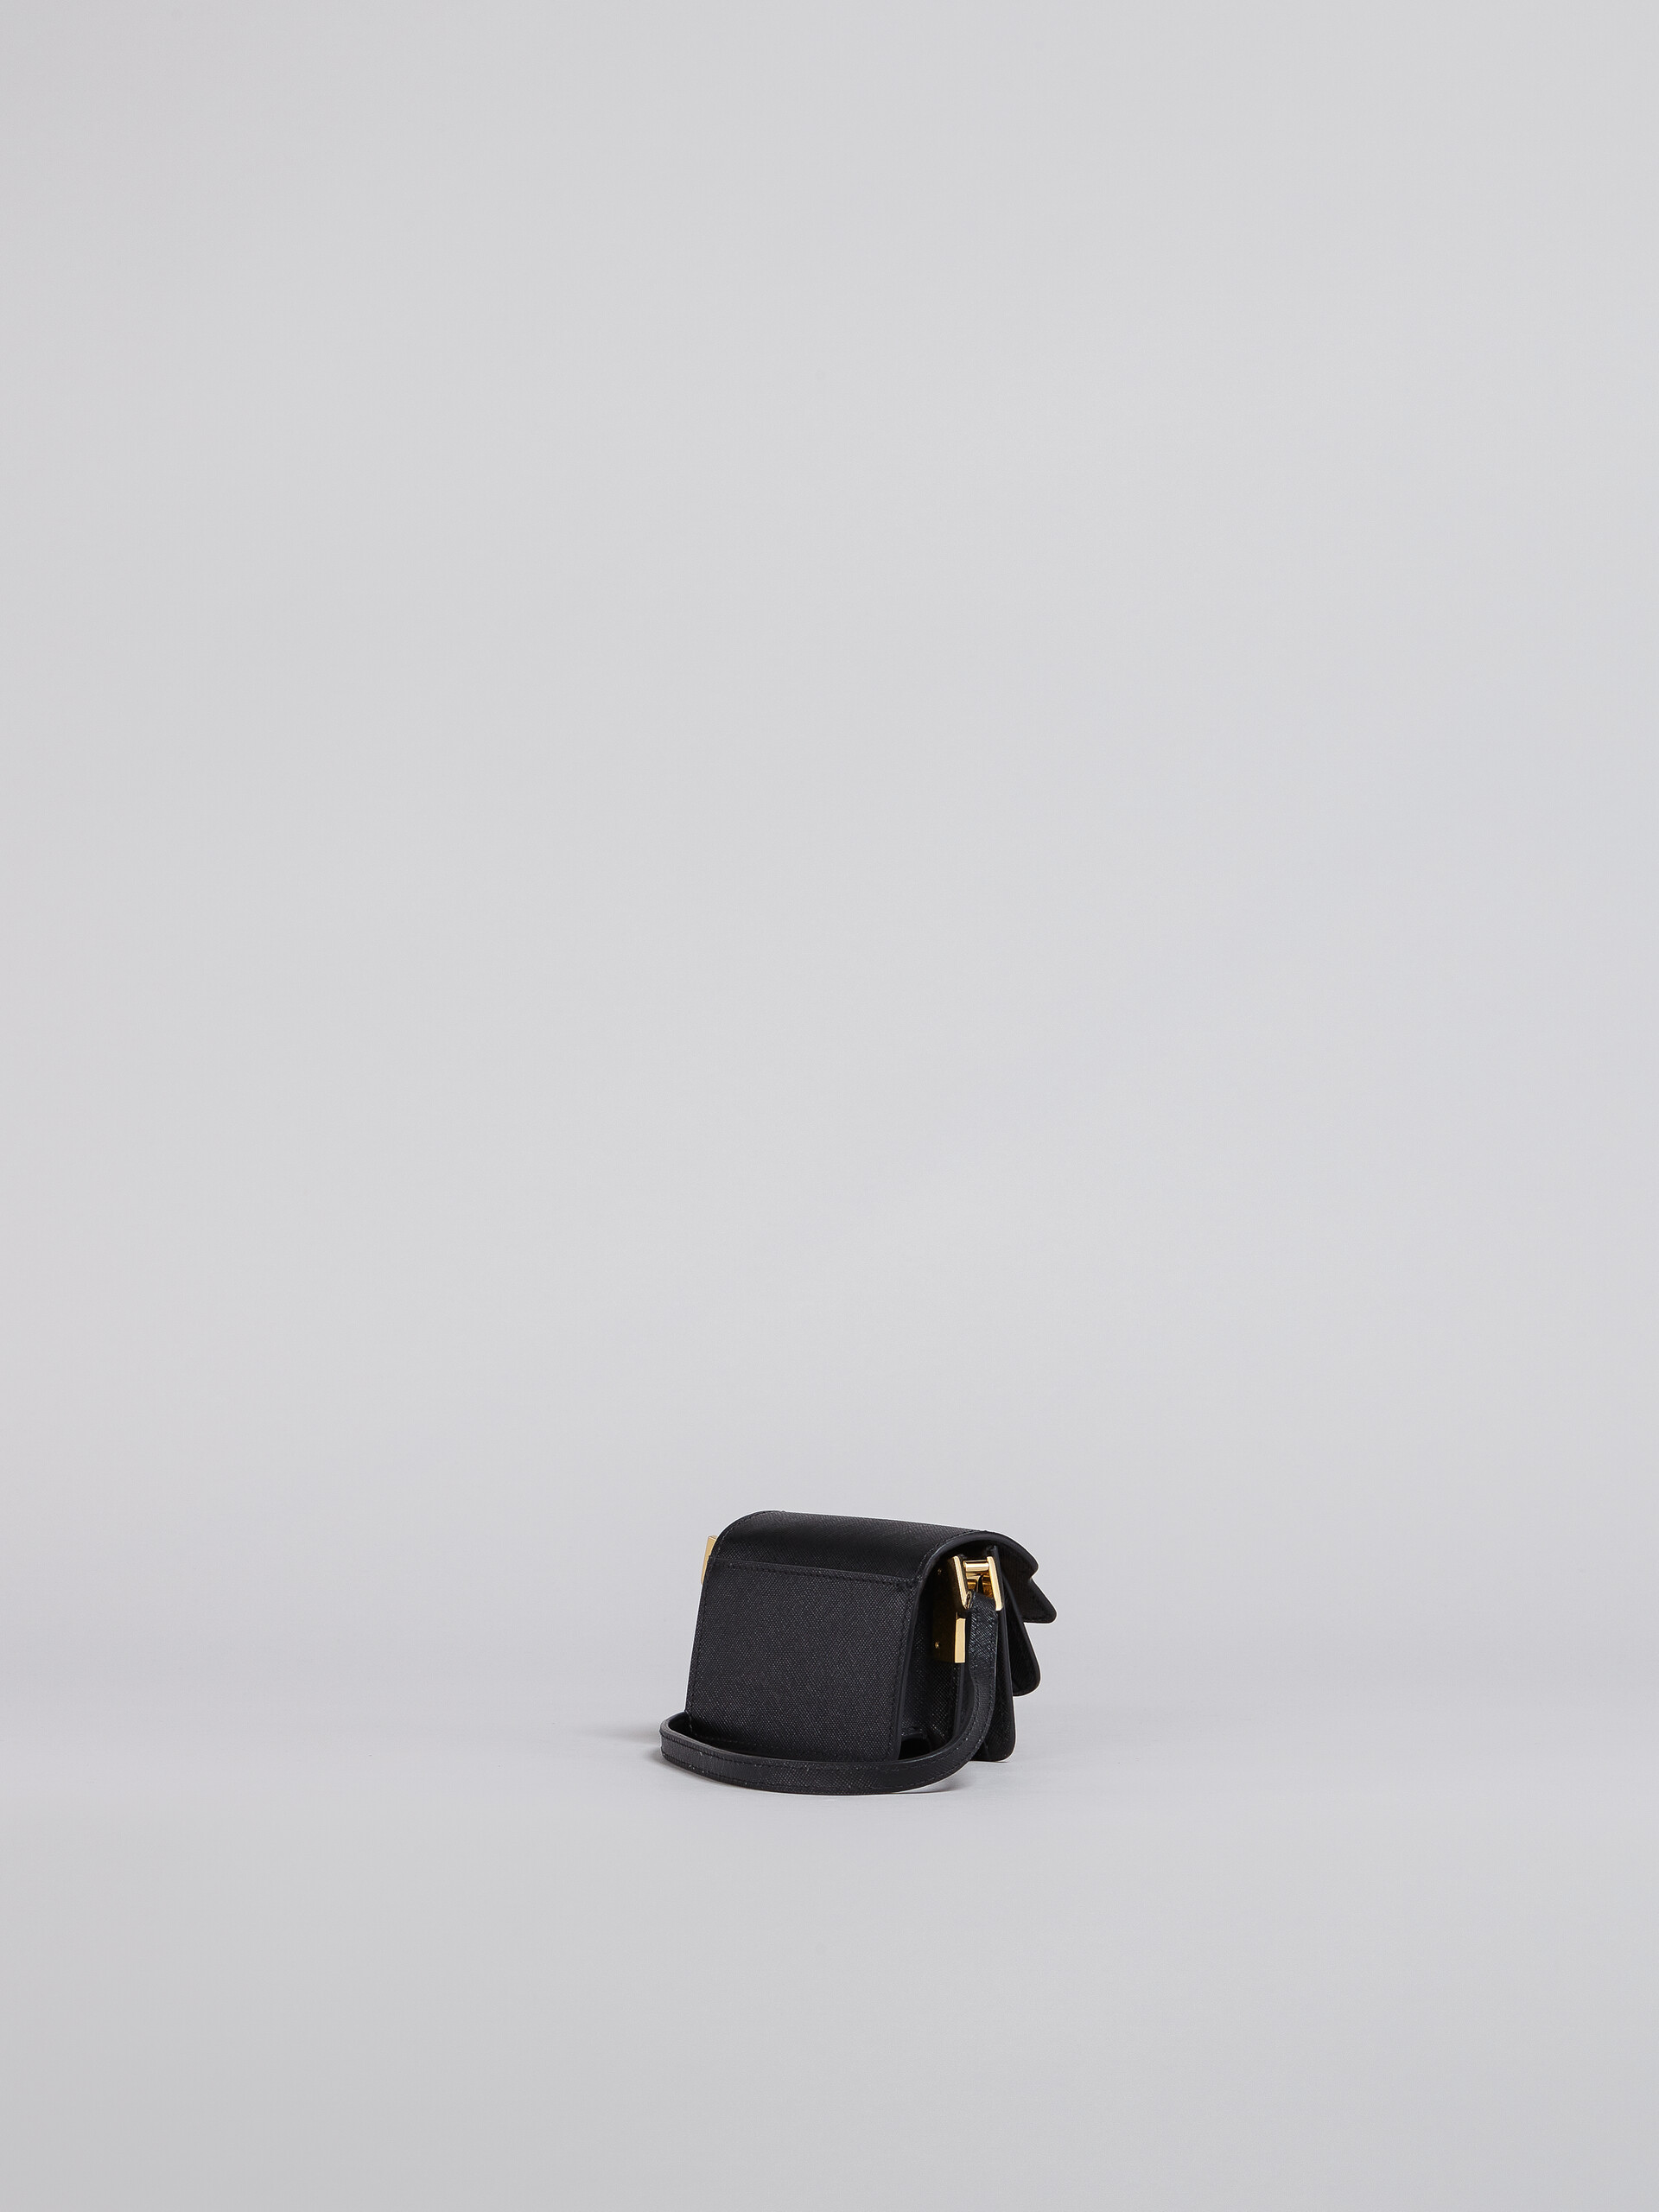 Tasche TRUNK aus schwarzem Saffiano-Kalbsleder - Schultertaschen - Image 2